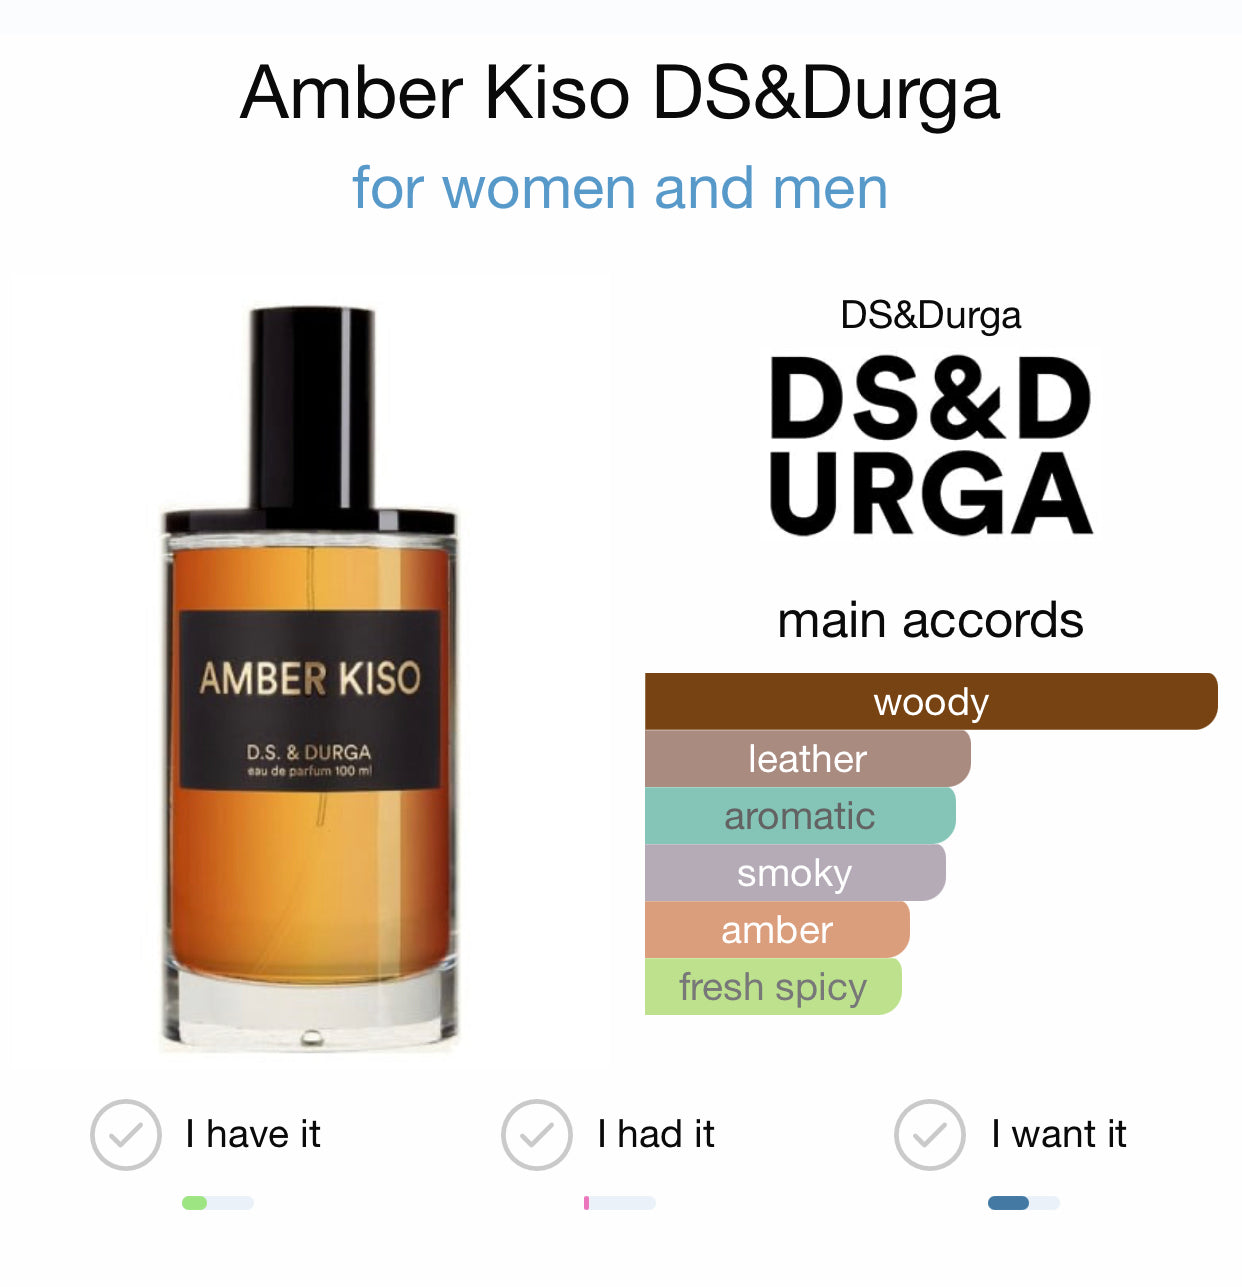 AMBER KISO - D.S. & DURGA